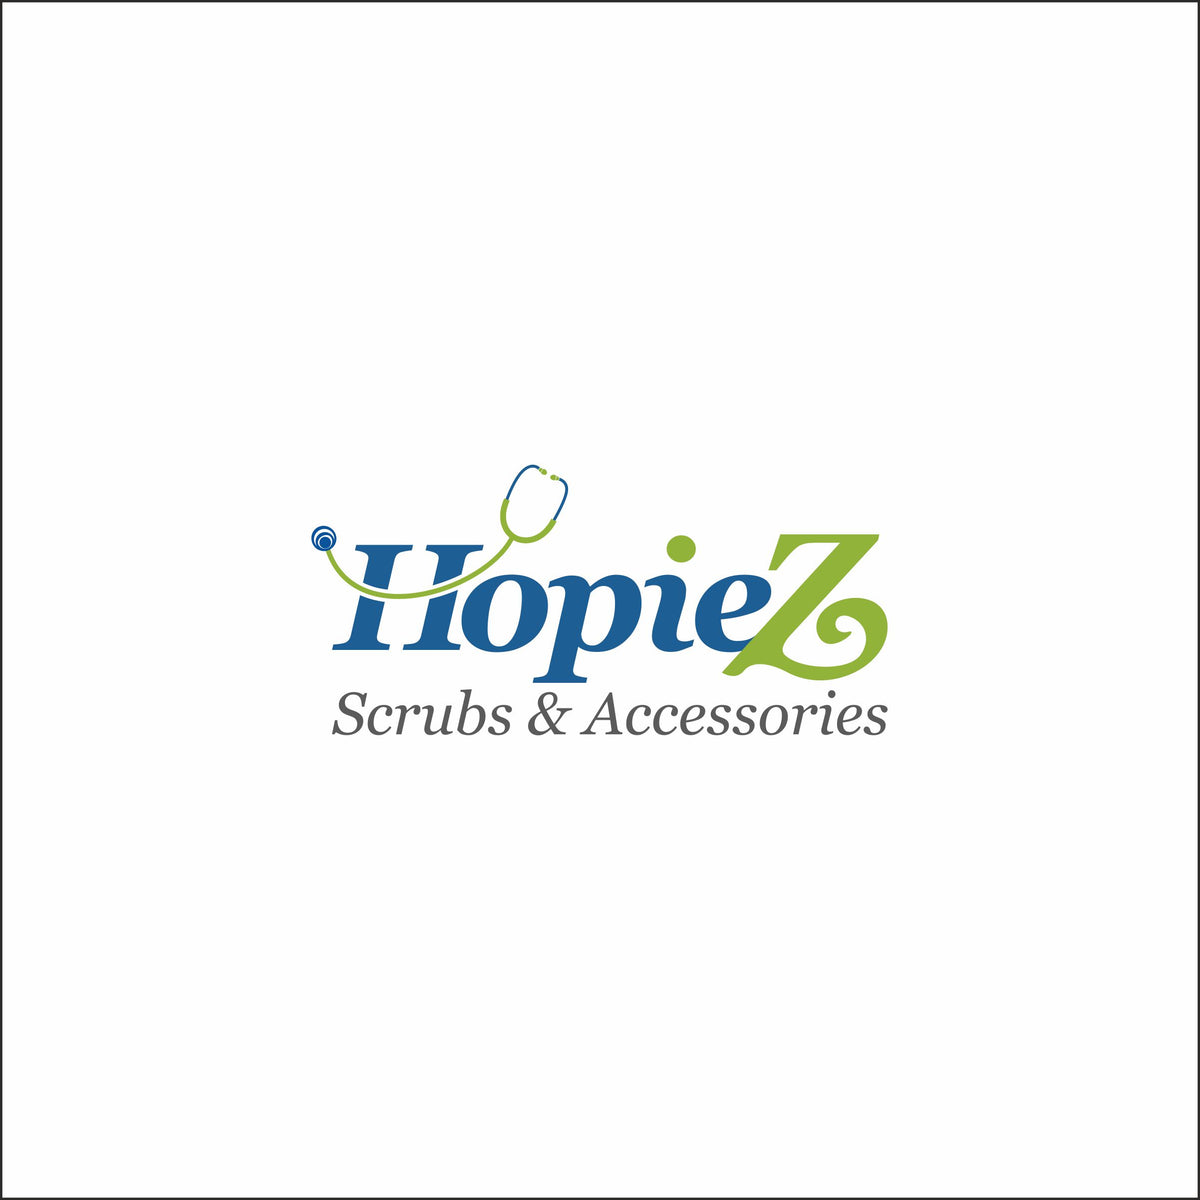 THE CSCRUBS COMFORT COLLECTION – HopieZ Scrubs & Accessories LLC